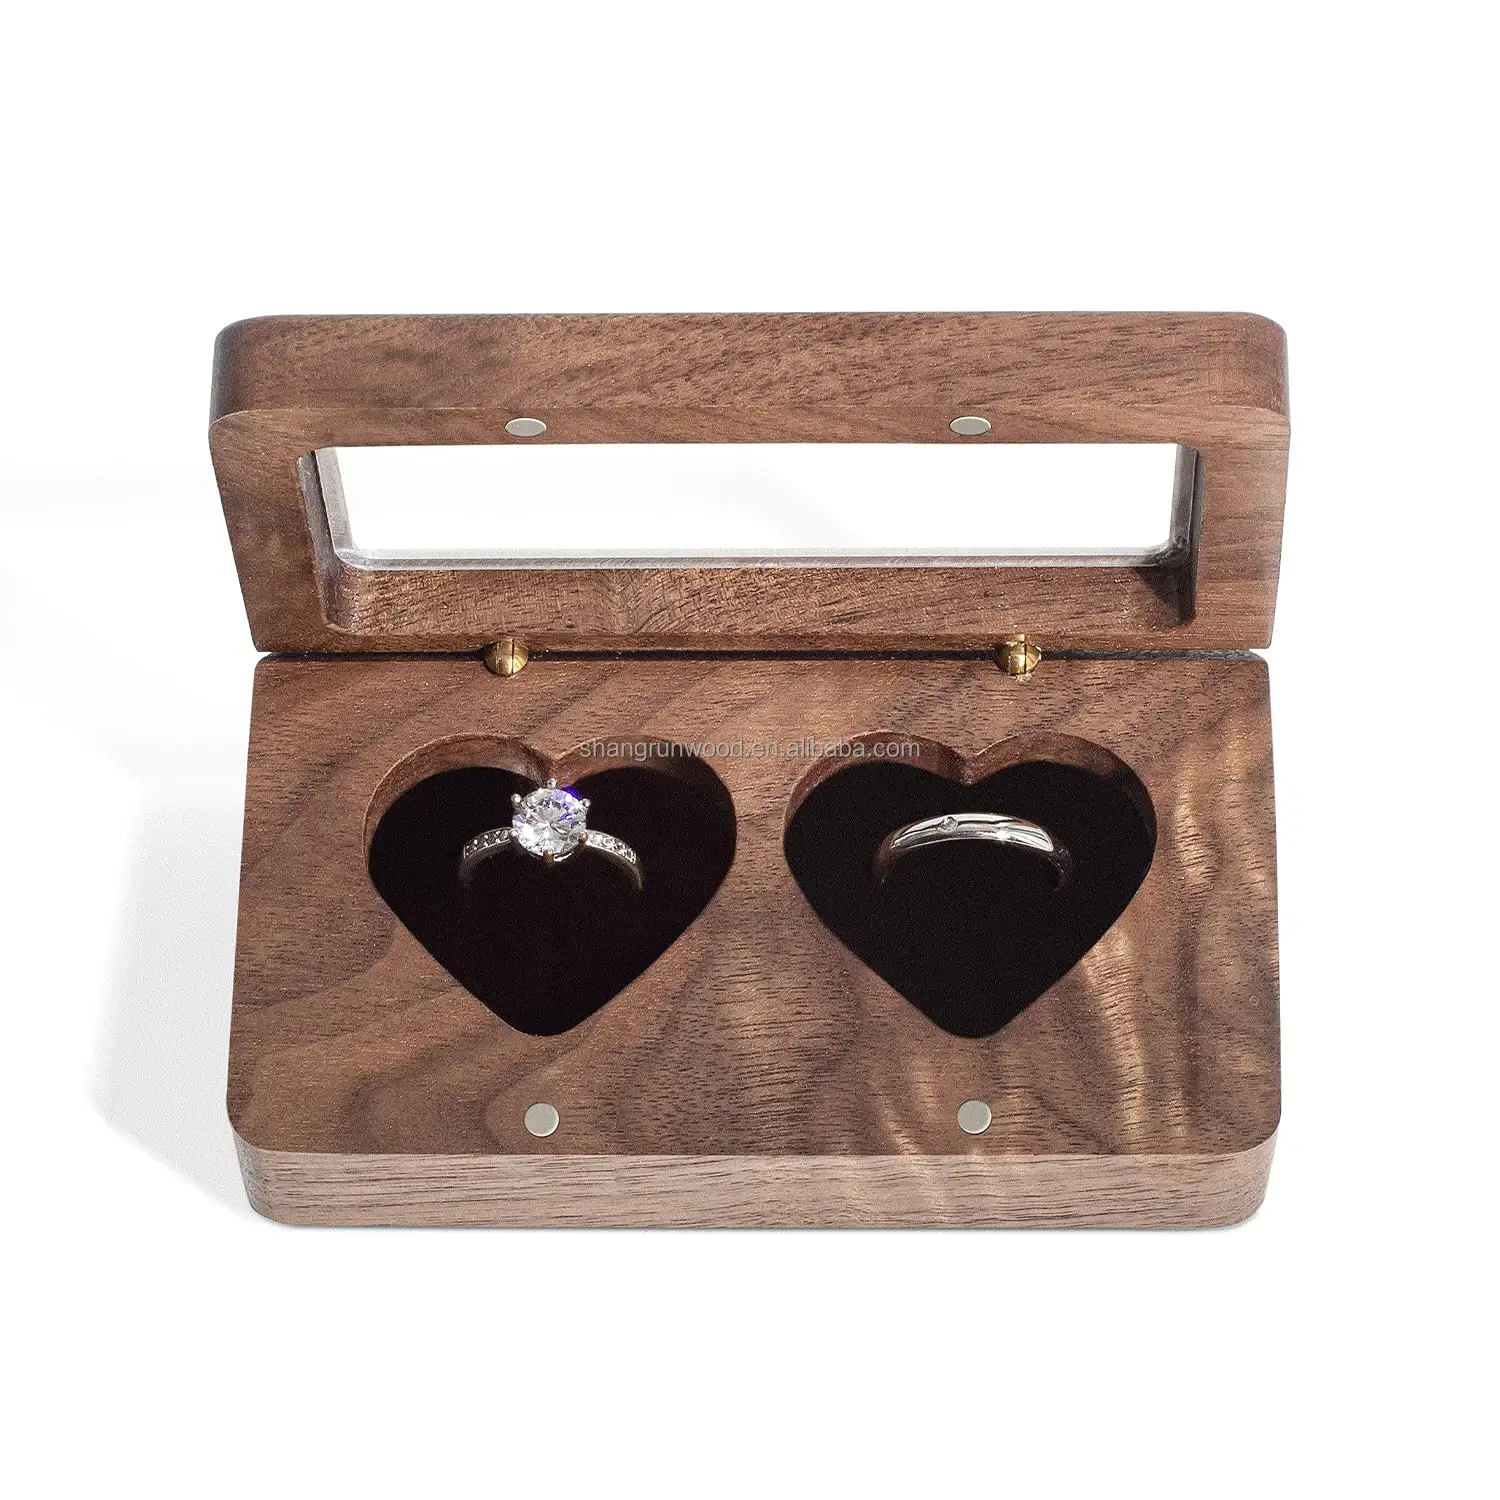 Kotak hadiah kayu kecil sederhana casing dekoratif kustom kotak penyimpanan cincin perhiasan kayu buatan tangan